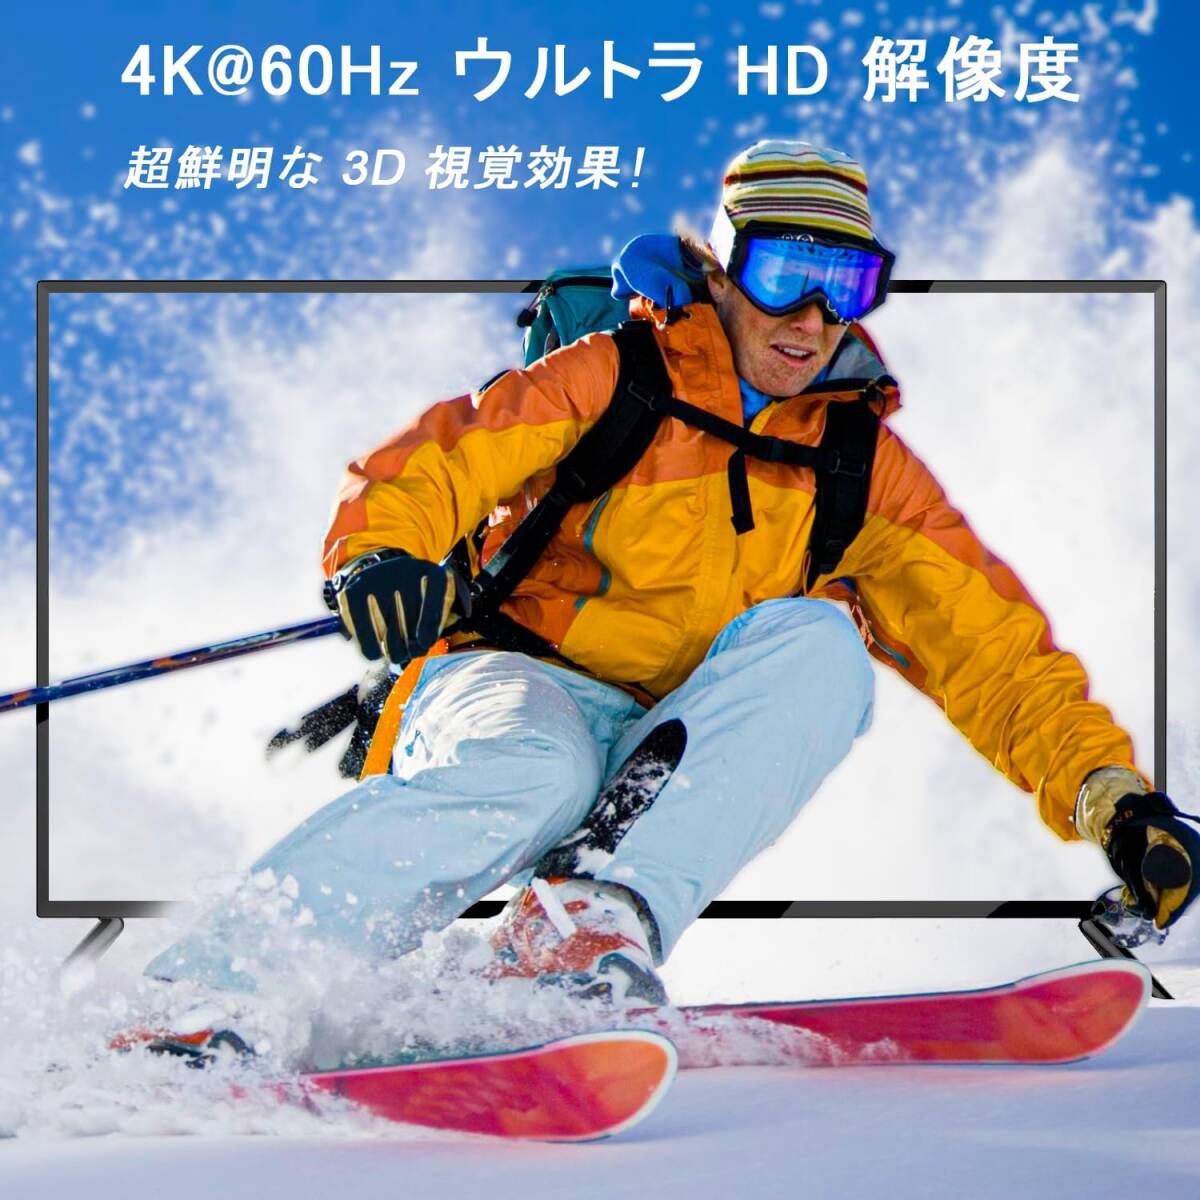 4画面同時出力「JCHICI」 HDMI分配器 4K@60Hz HDR&3Dビデオ対応 HDMI2.0 スプリッター EDID機能搭載 電源アダプターと日本語説明書付属